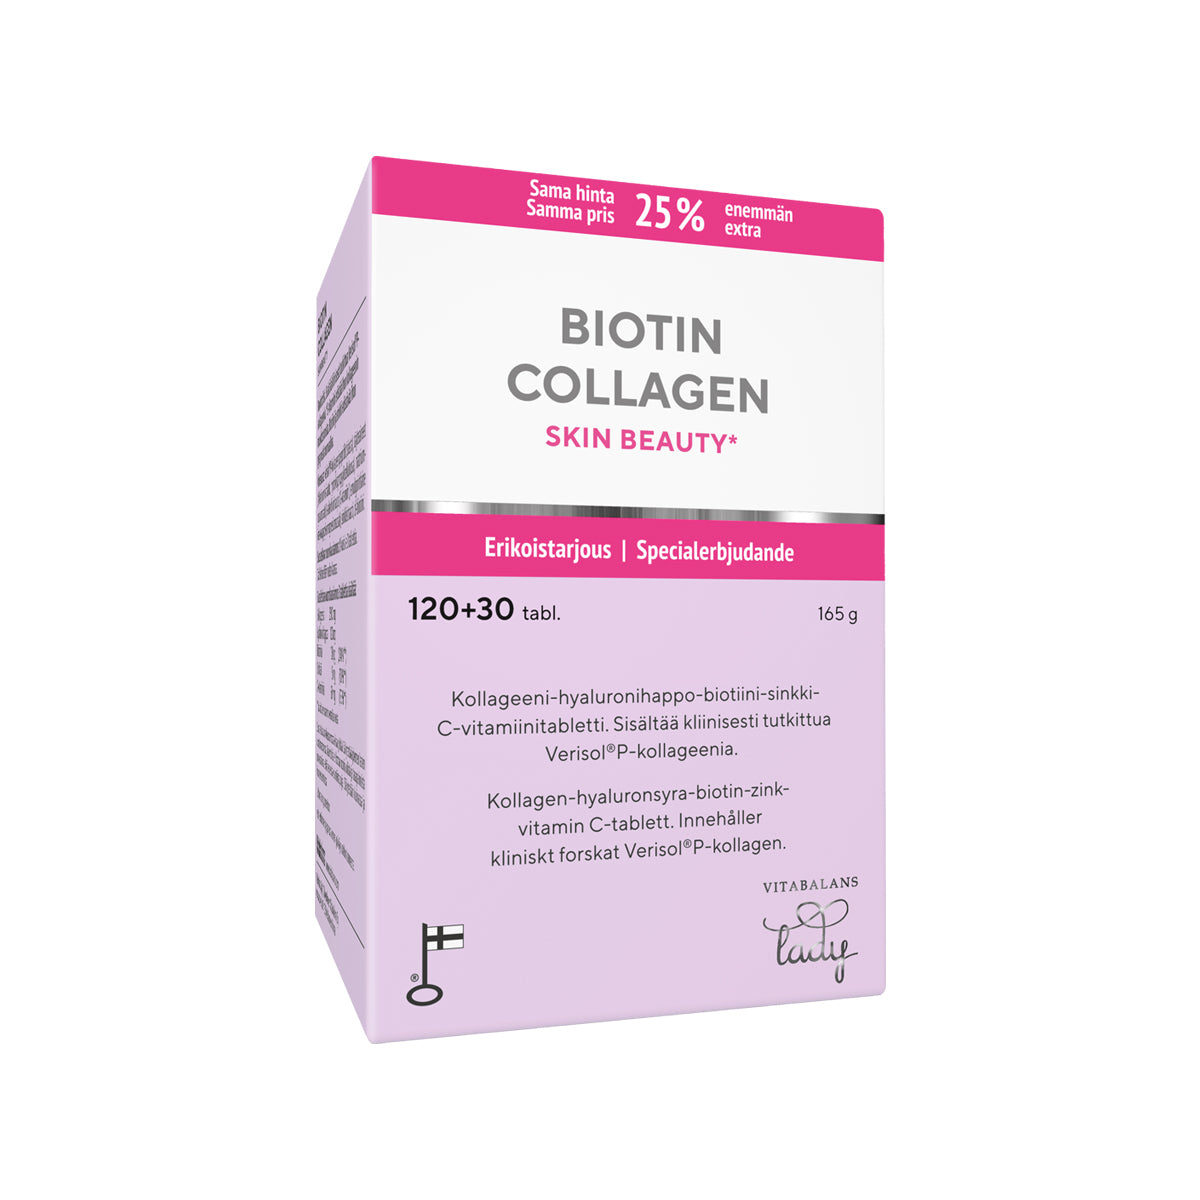 Biotin Collagen Skin Beauty - Kollageenitabletti +25 % KAMPANJAPAKKAUS 120+30 tabl. - Pakkaus hieman vaurioitunut, tuote käyttökelpoinen